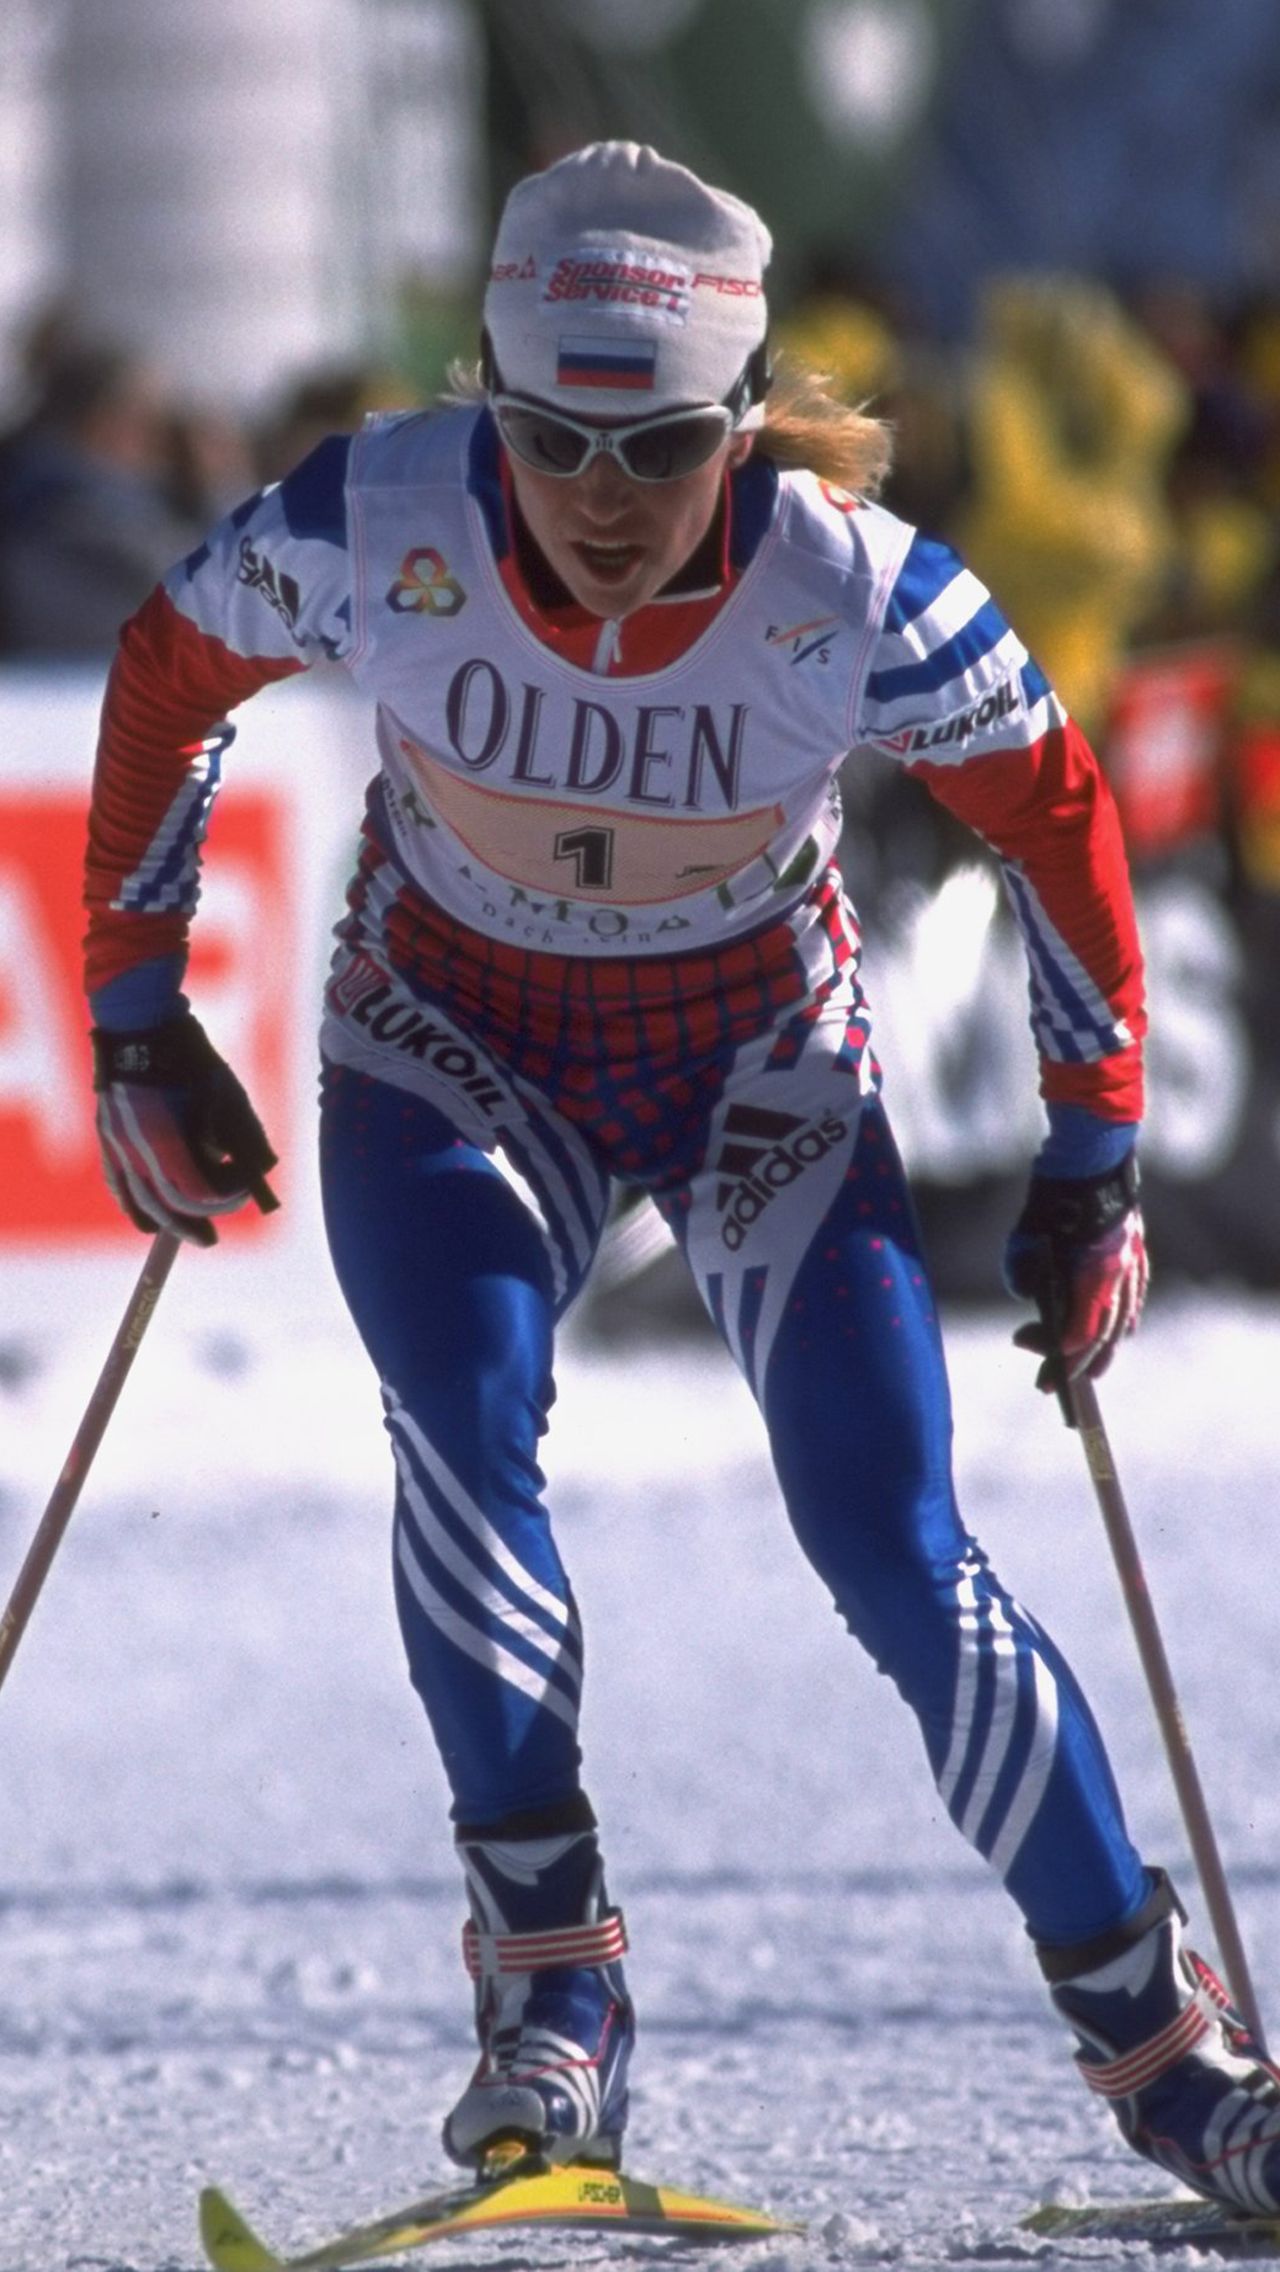 Достичь успеха и в лыжах, и в биатлоне удалось Анфисе Резцовой. Она стала двукратной чемпионкой мира и олимпийской чемпионкой в лыжных гонках, а потом дважды завоевала золото Игр в биатлоне.